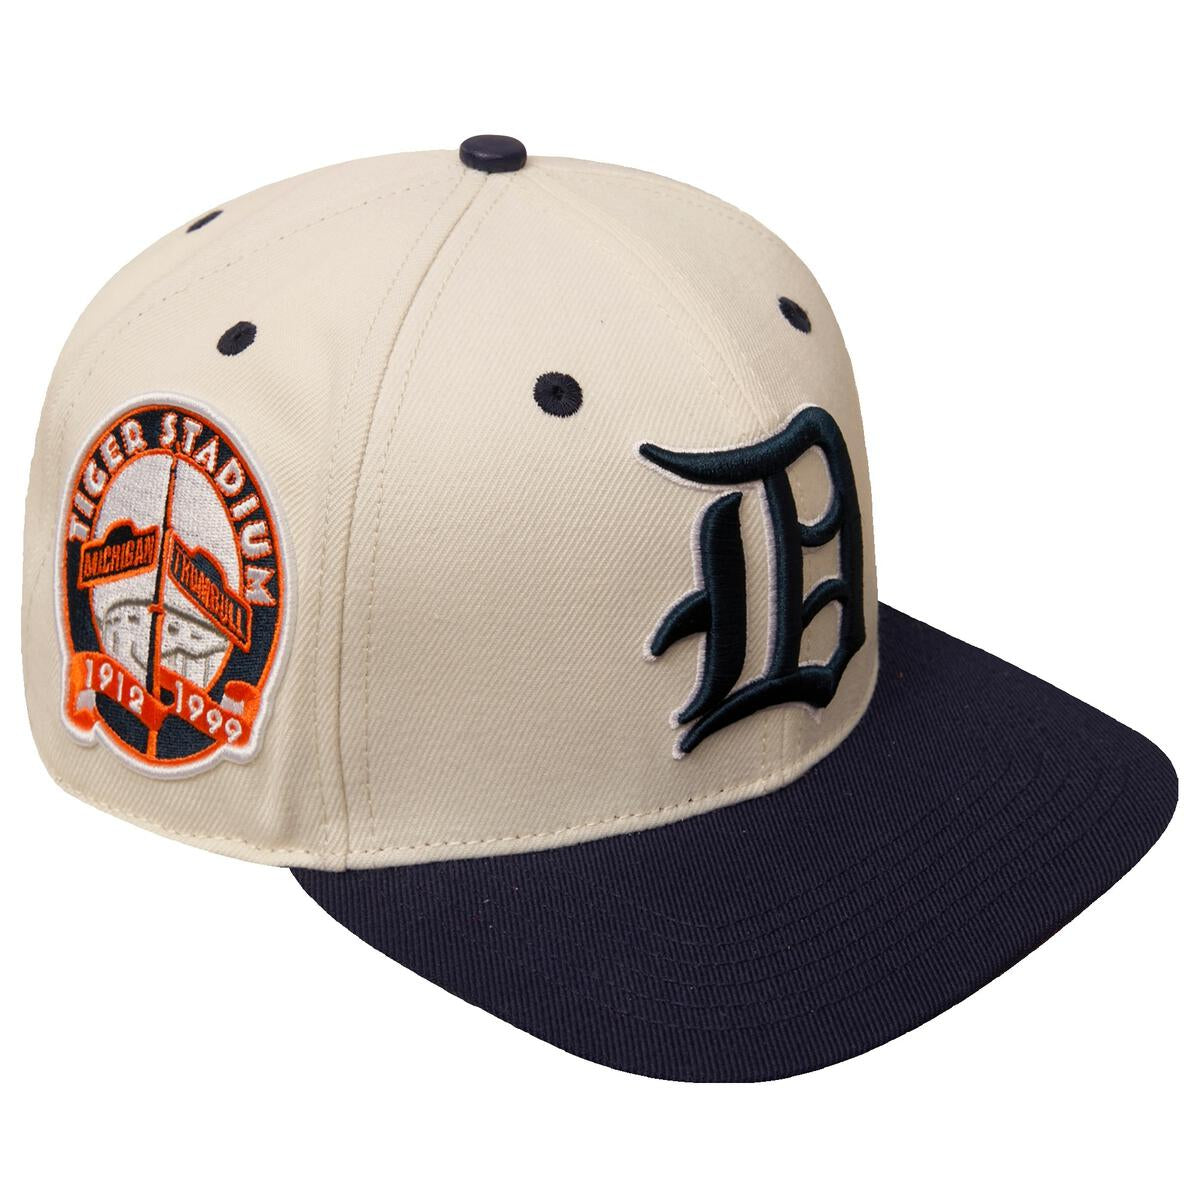 Shop Pro Standard Detroit Tigers Stacked Logo Snapback LDT731960 blue